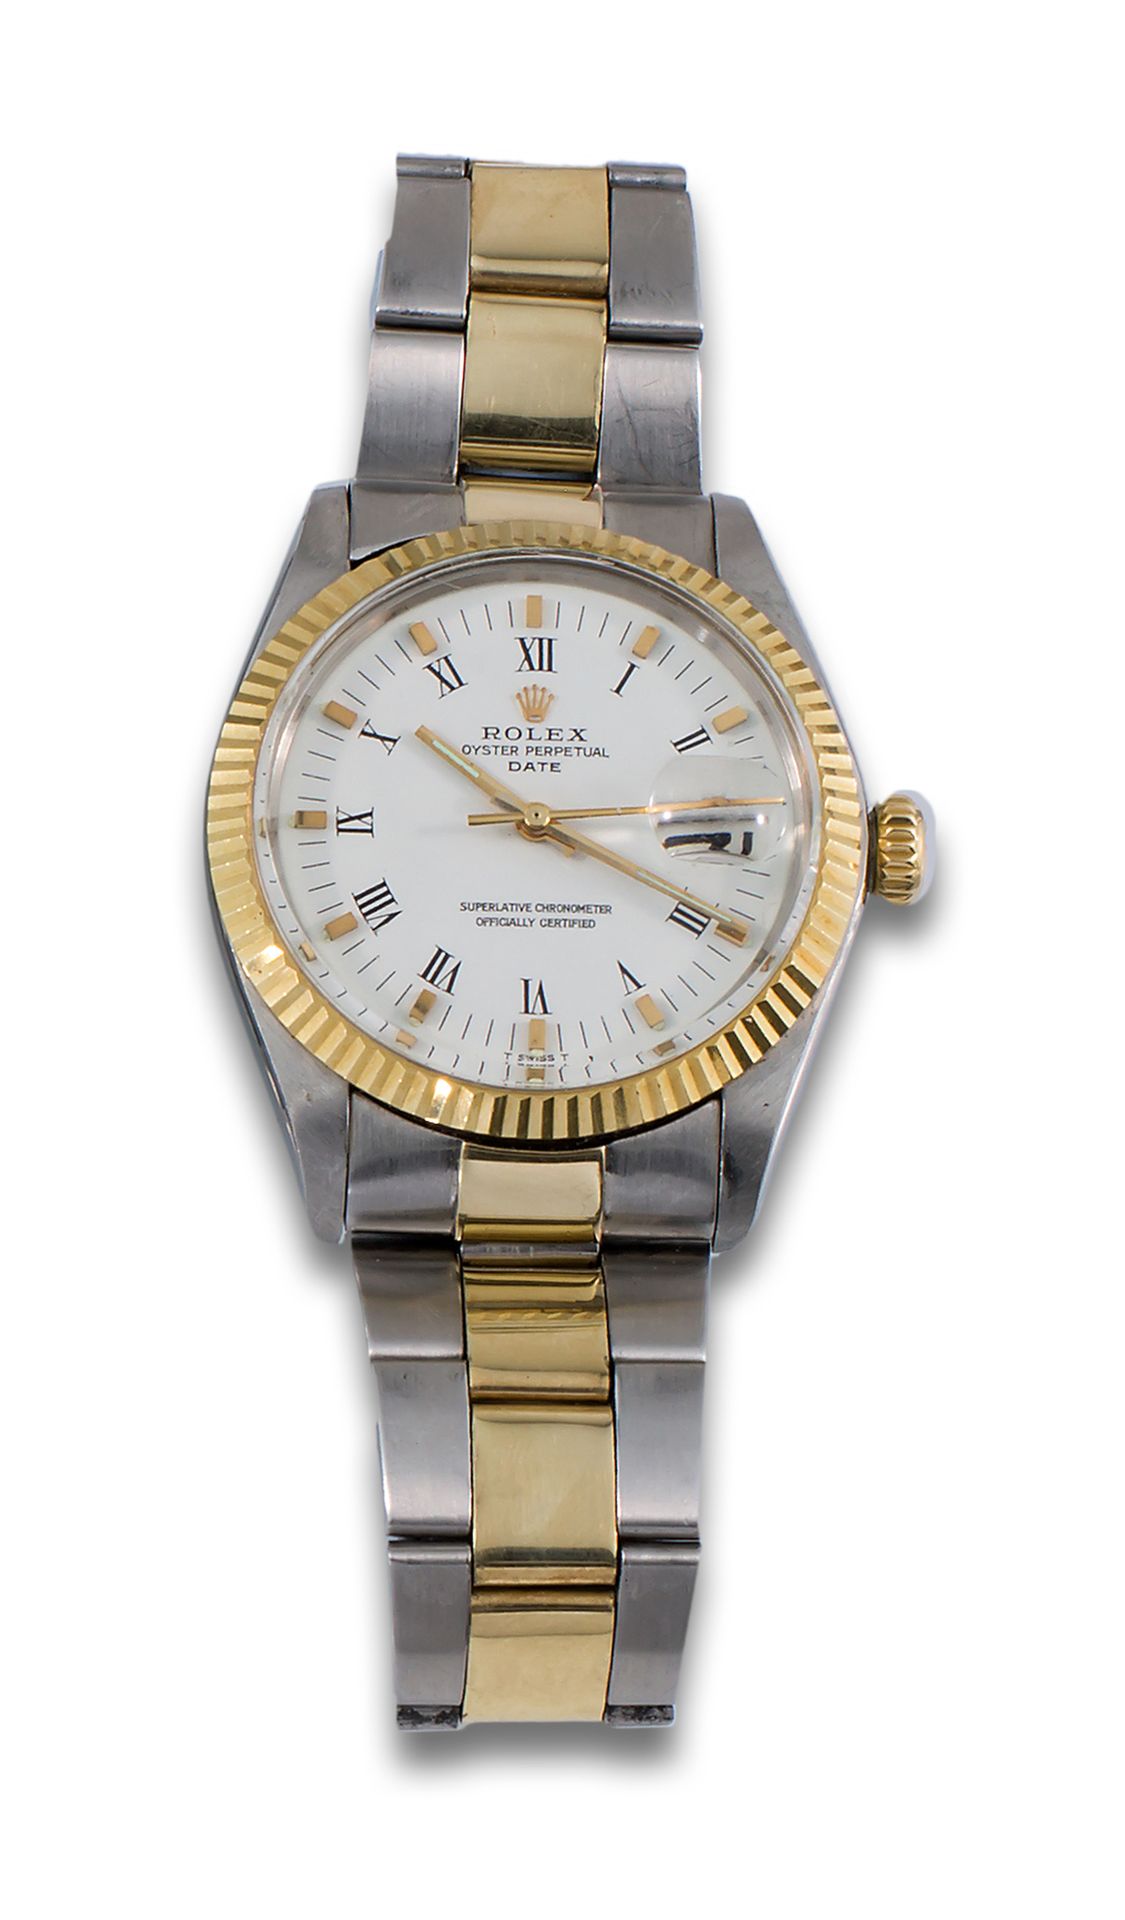 Reloj ROLEX Oyster Perpetual Date, movimiento de oro ama… Drouot.com